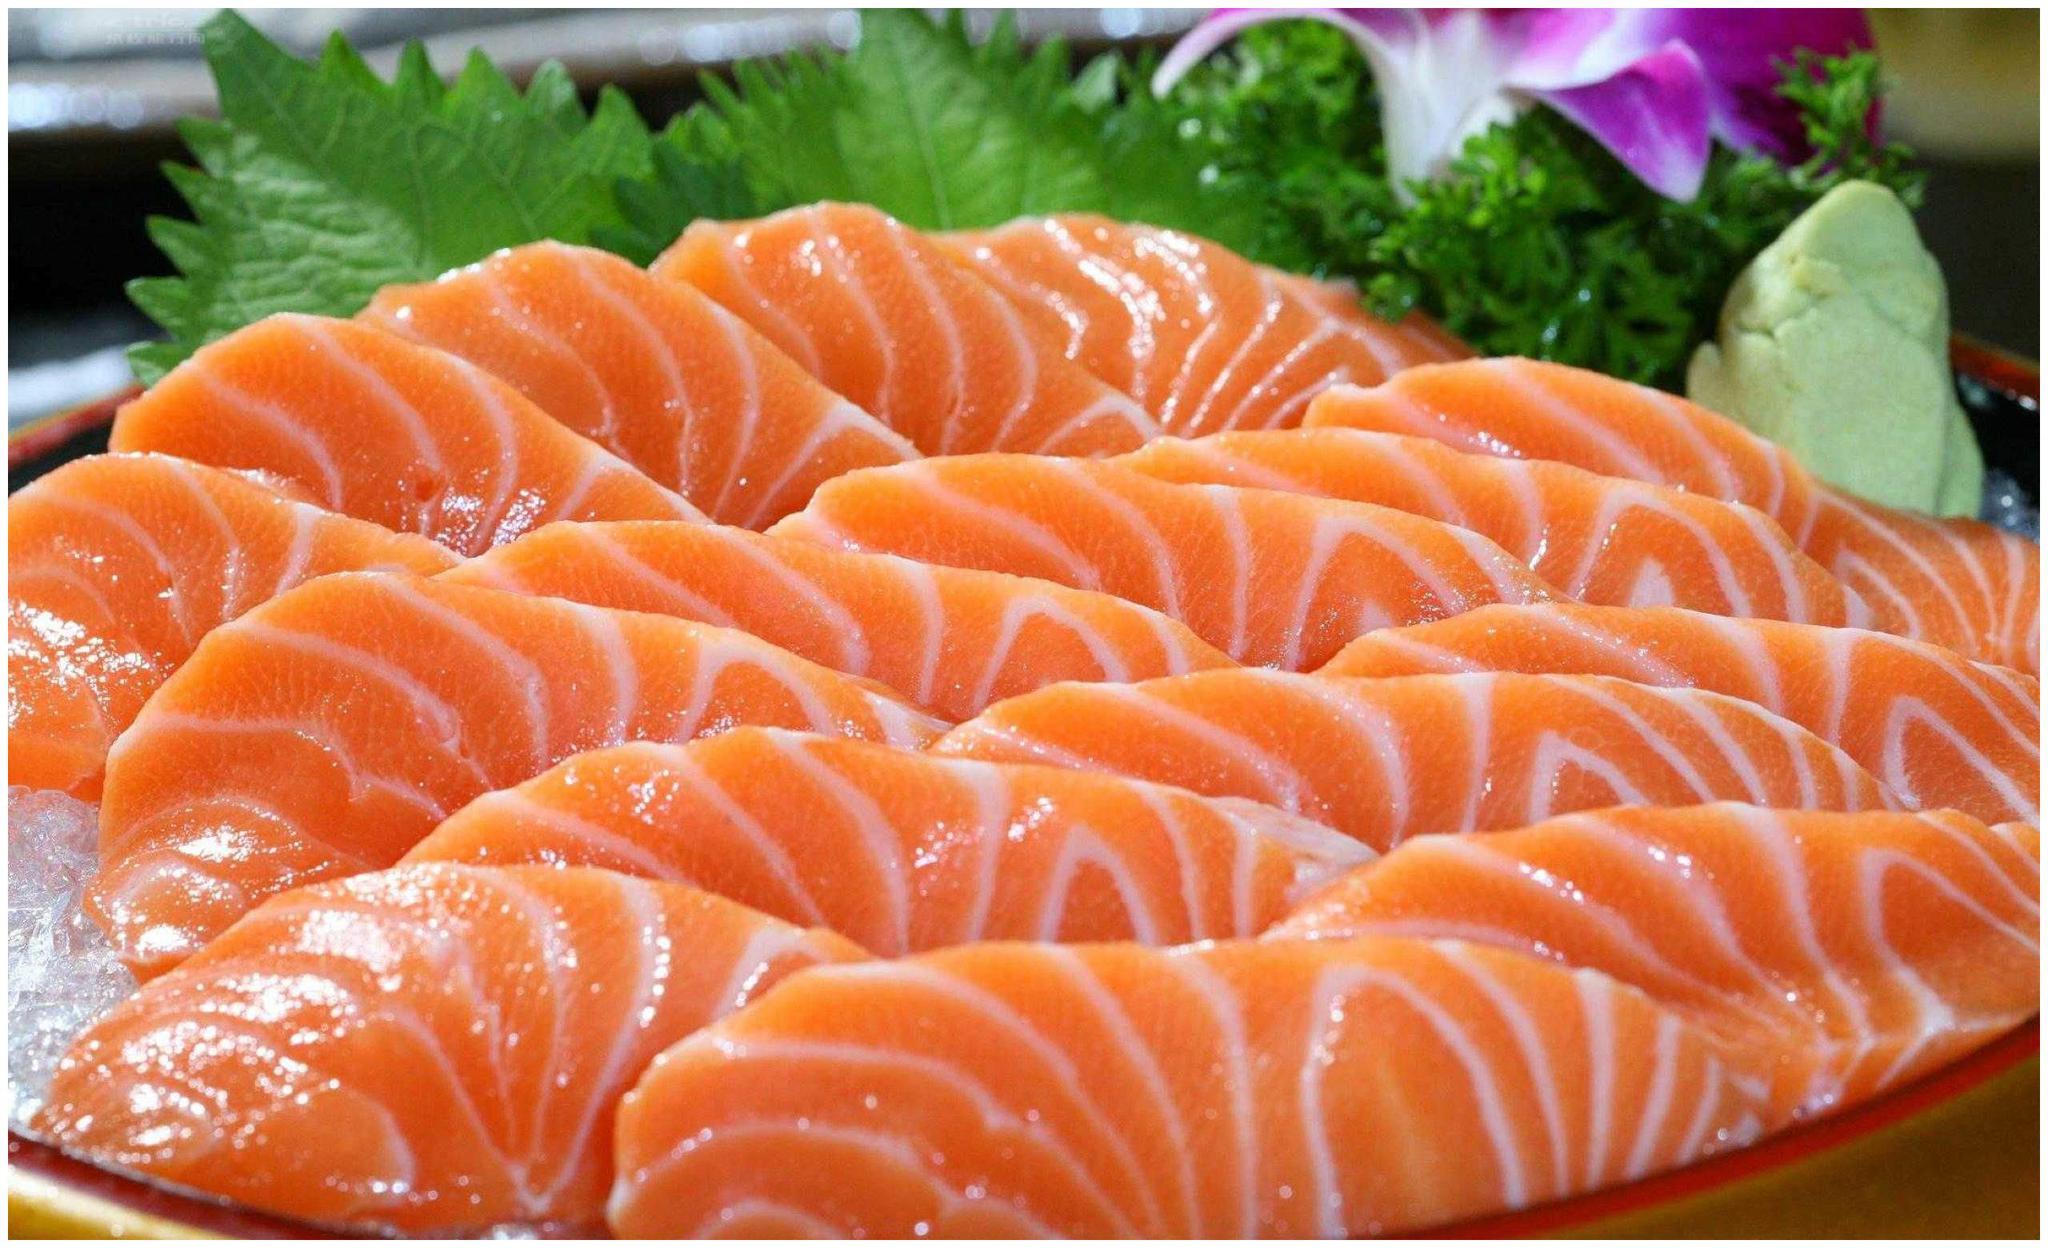 吃刺身三文鱼好处多多 它能美容养颜 也能增强免疫力